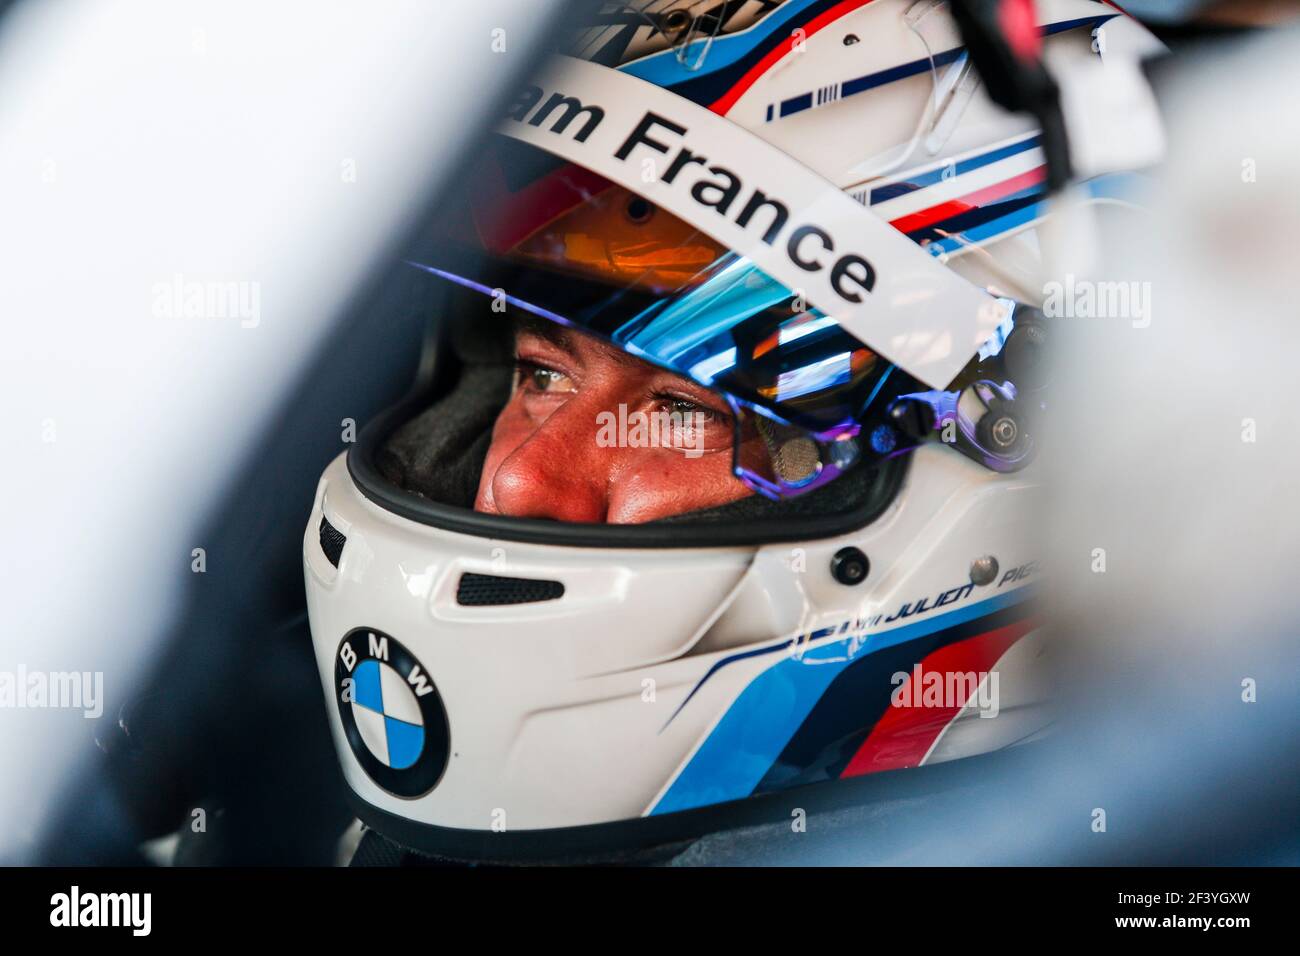 PIGUET Julien (Fra), Team BMW Frankreich BMW M4 GT4, Porträt während 2018 FFSA GT Circuit französisch Meisterschaft, in Barcelone, Spanisch vom 28. Bis 30. september - Foto: Xavi Bonilla / DPPI Stockfoto